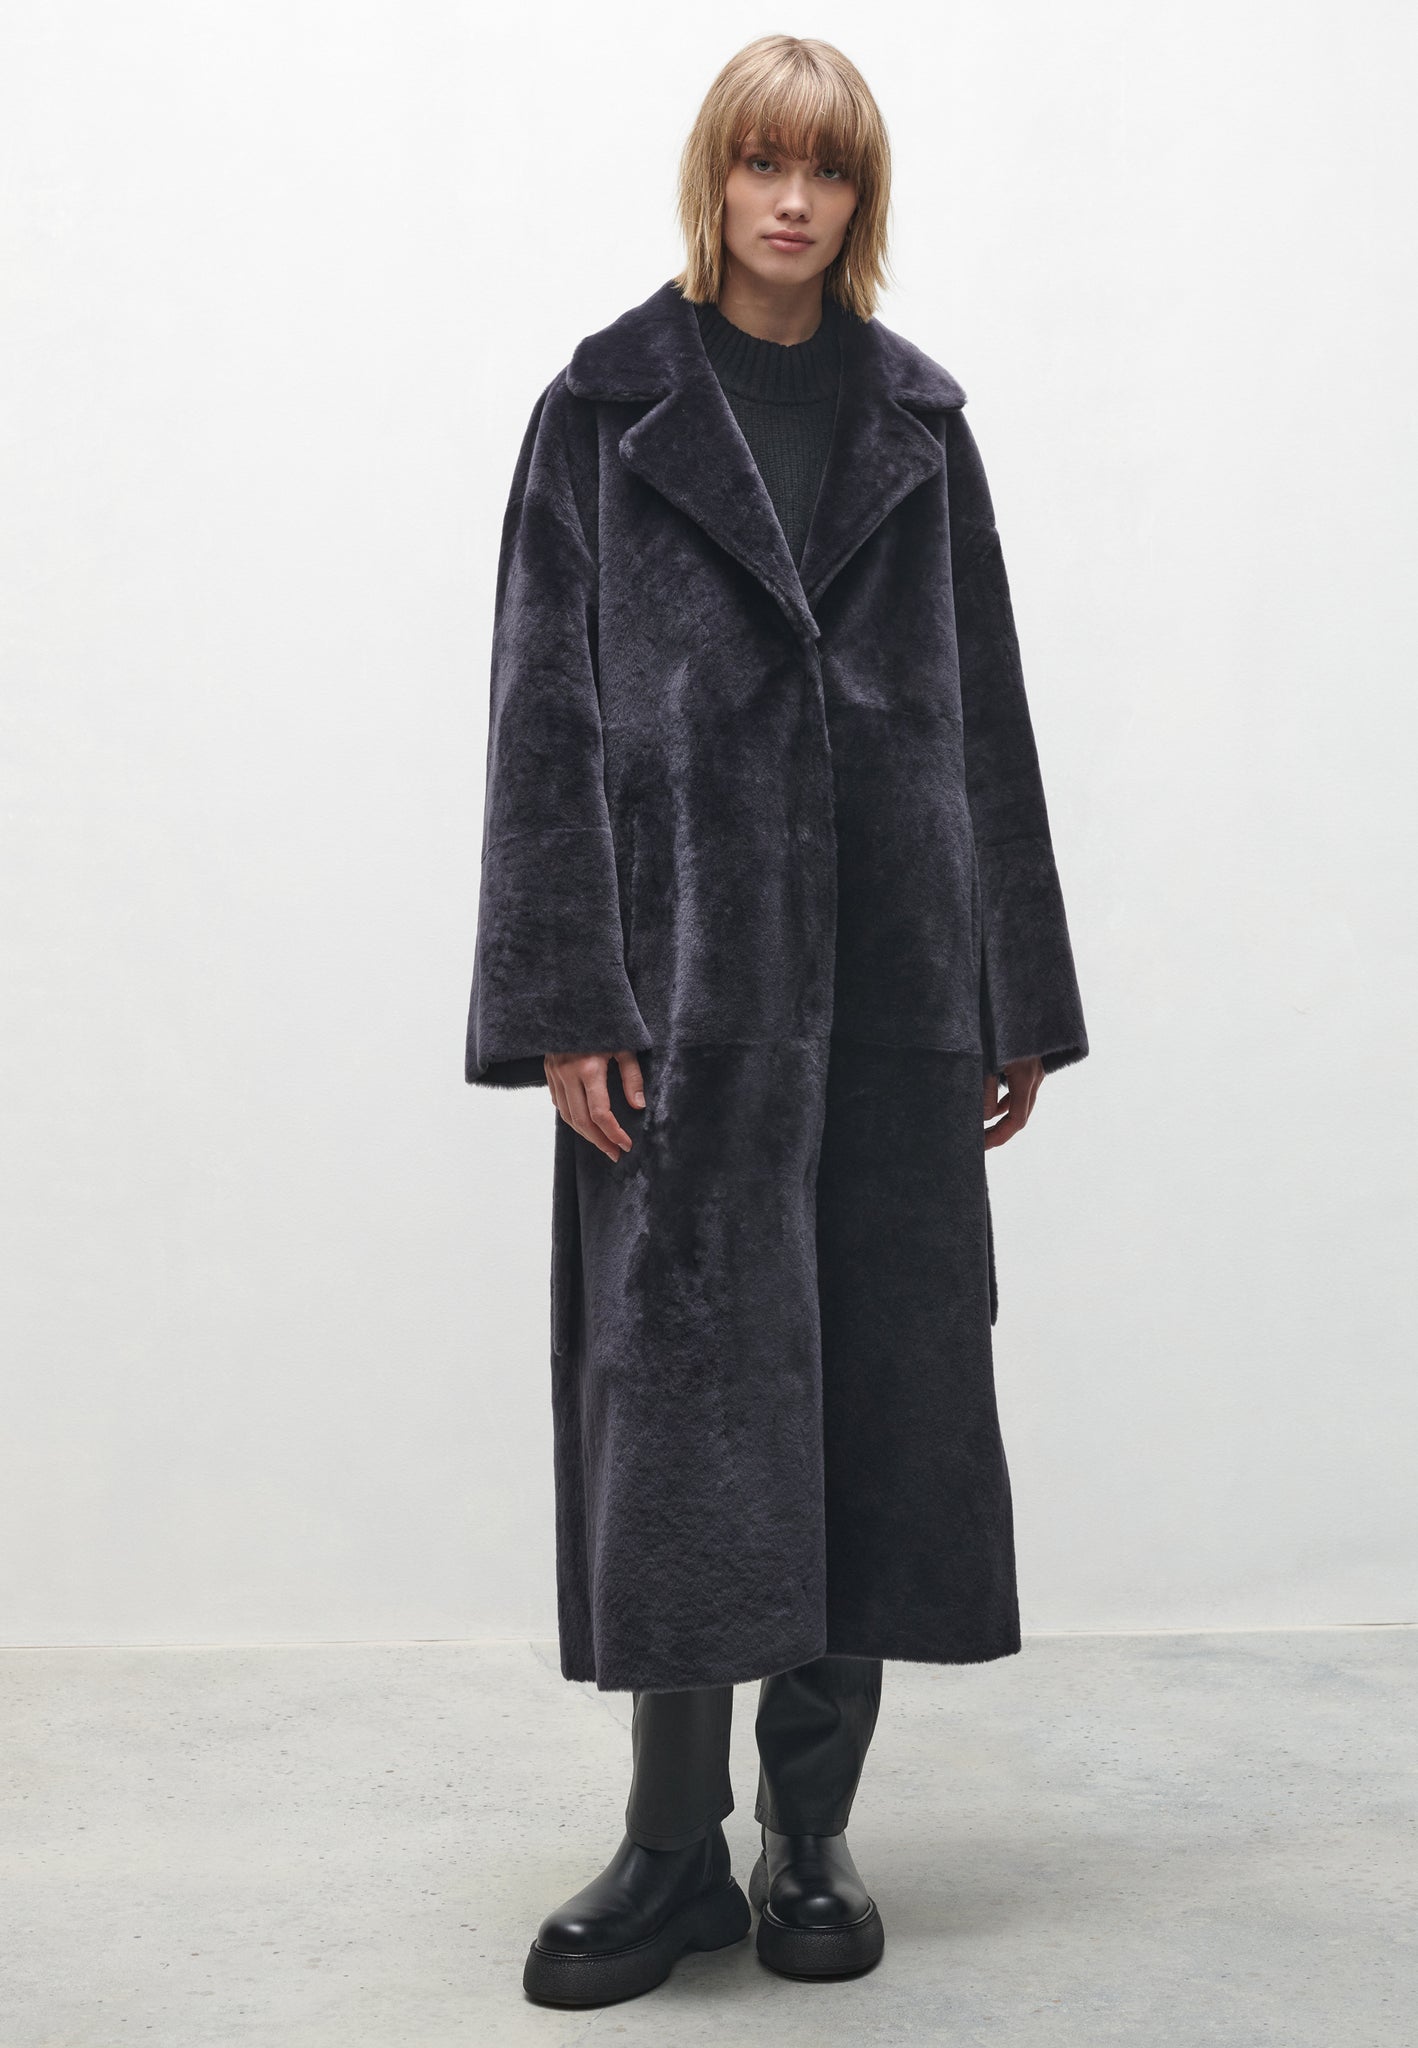 VIENNA | Shearling coat